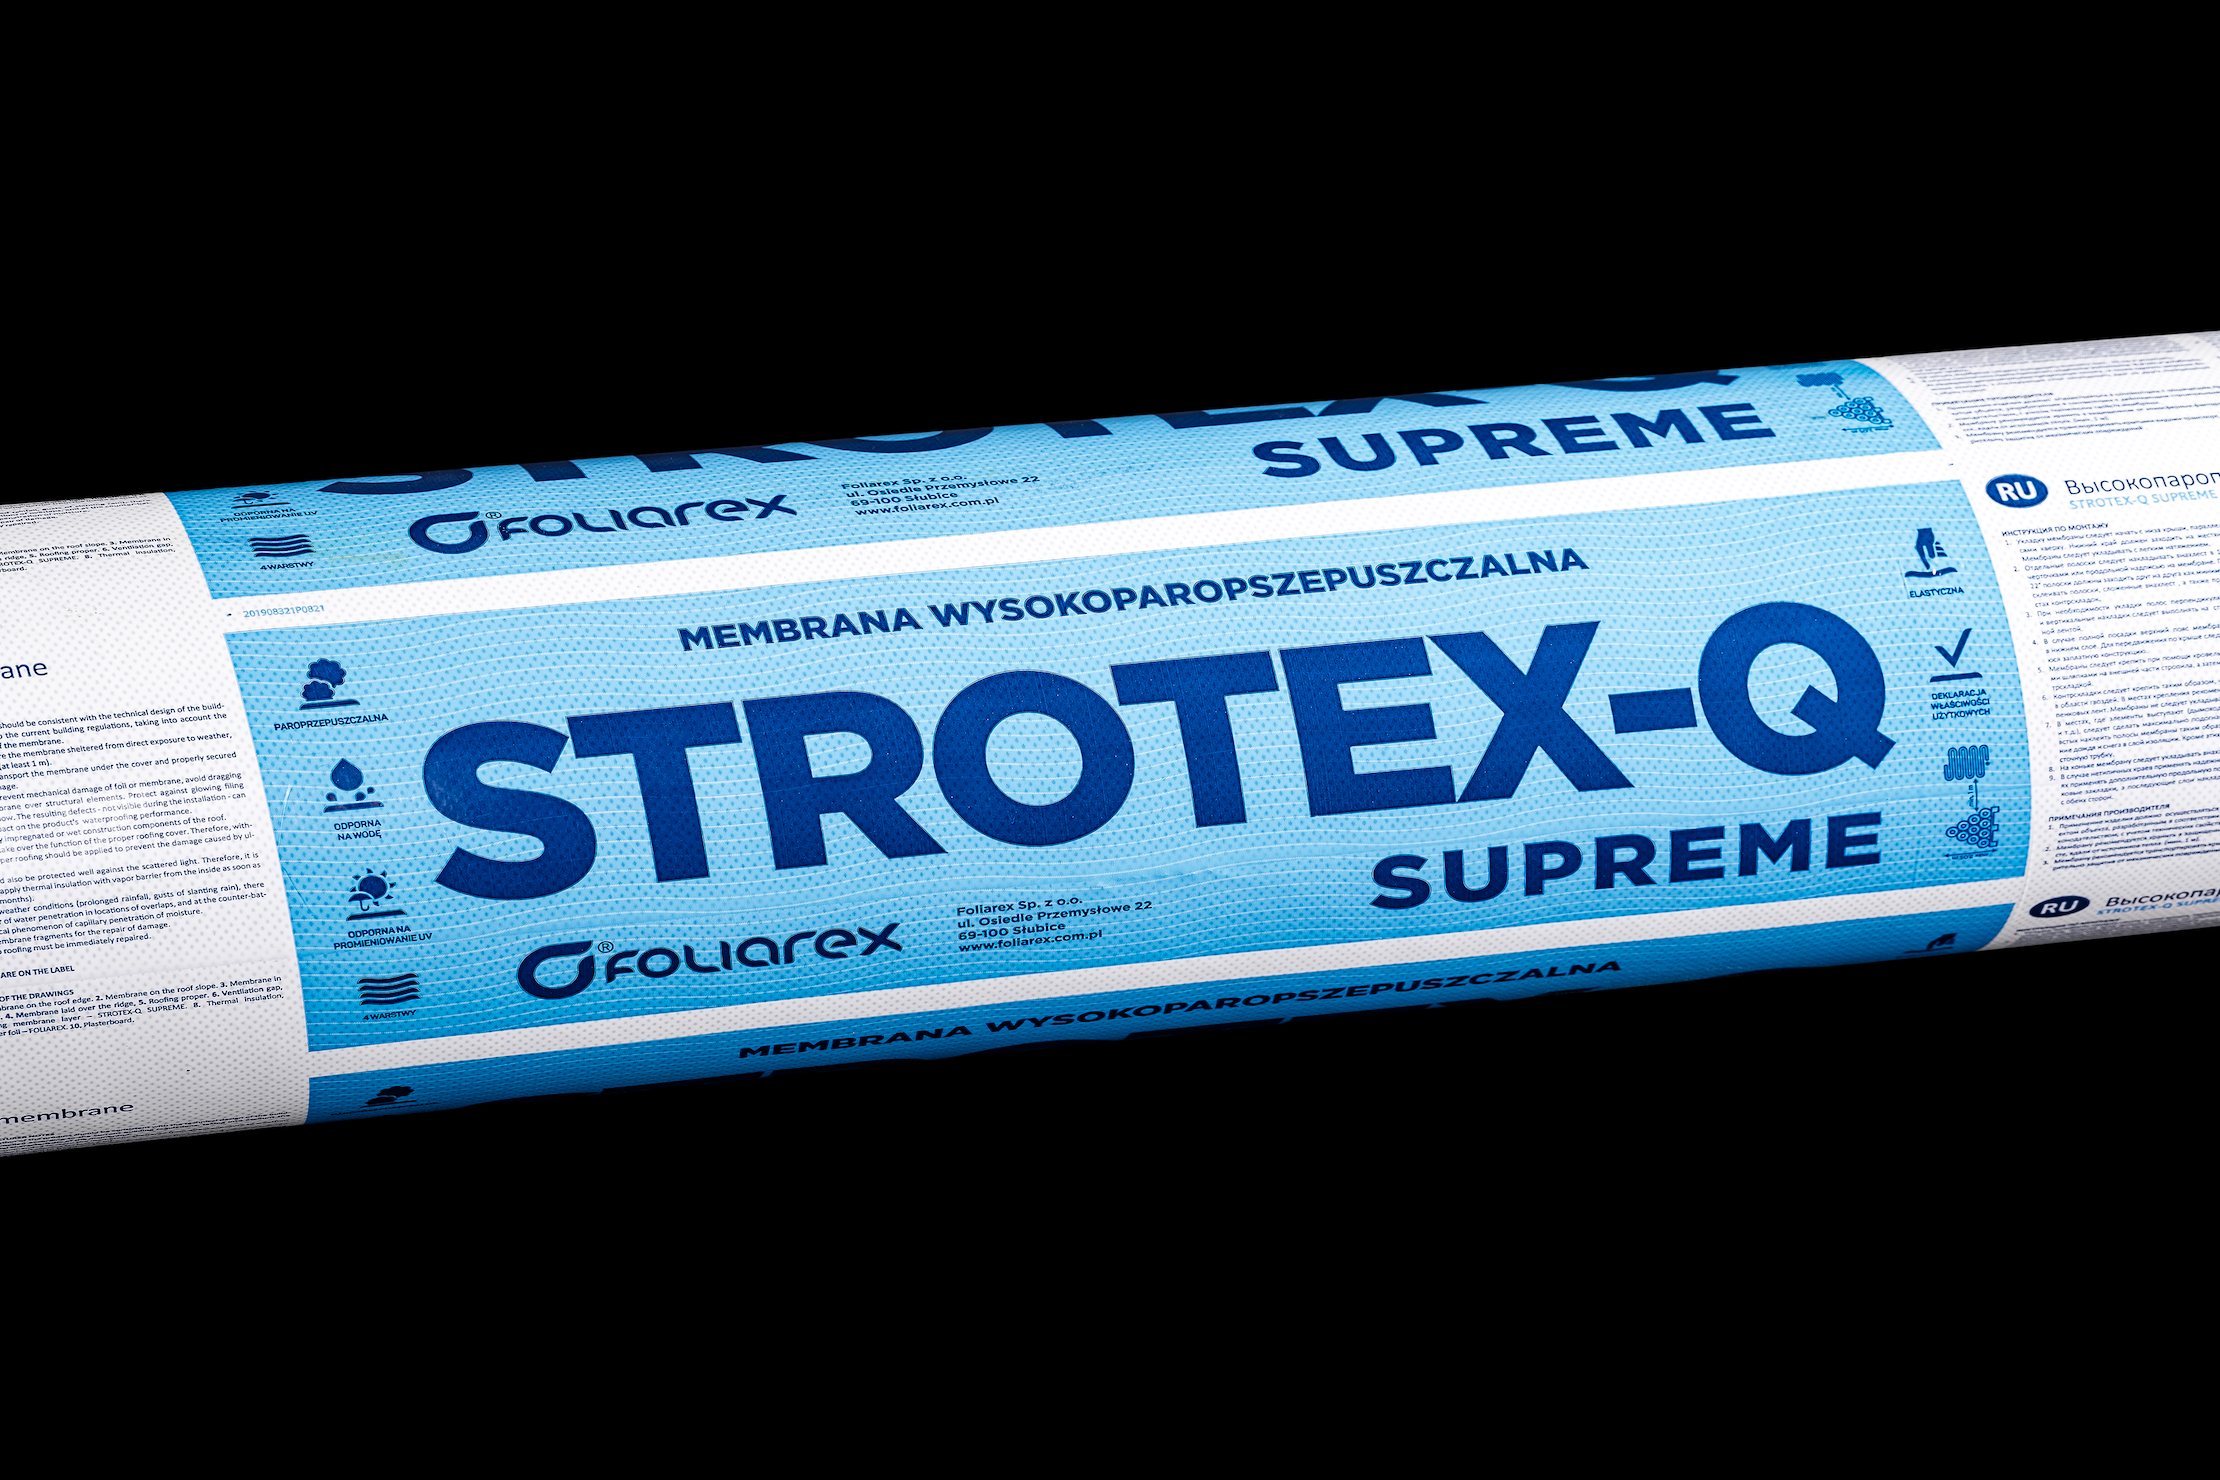 Strešná fólia 170 g Strotex Q Supreme 1,5 x 50 m (75m2)